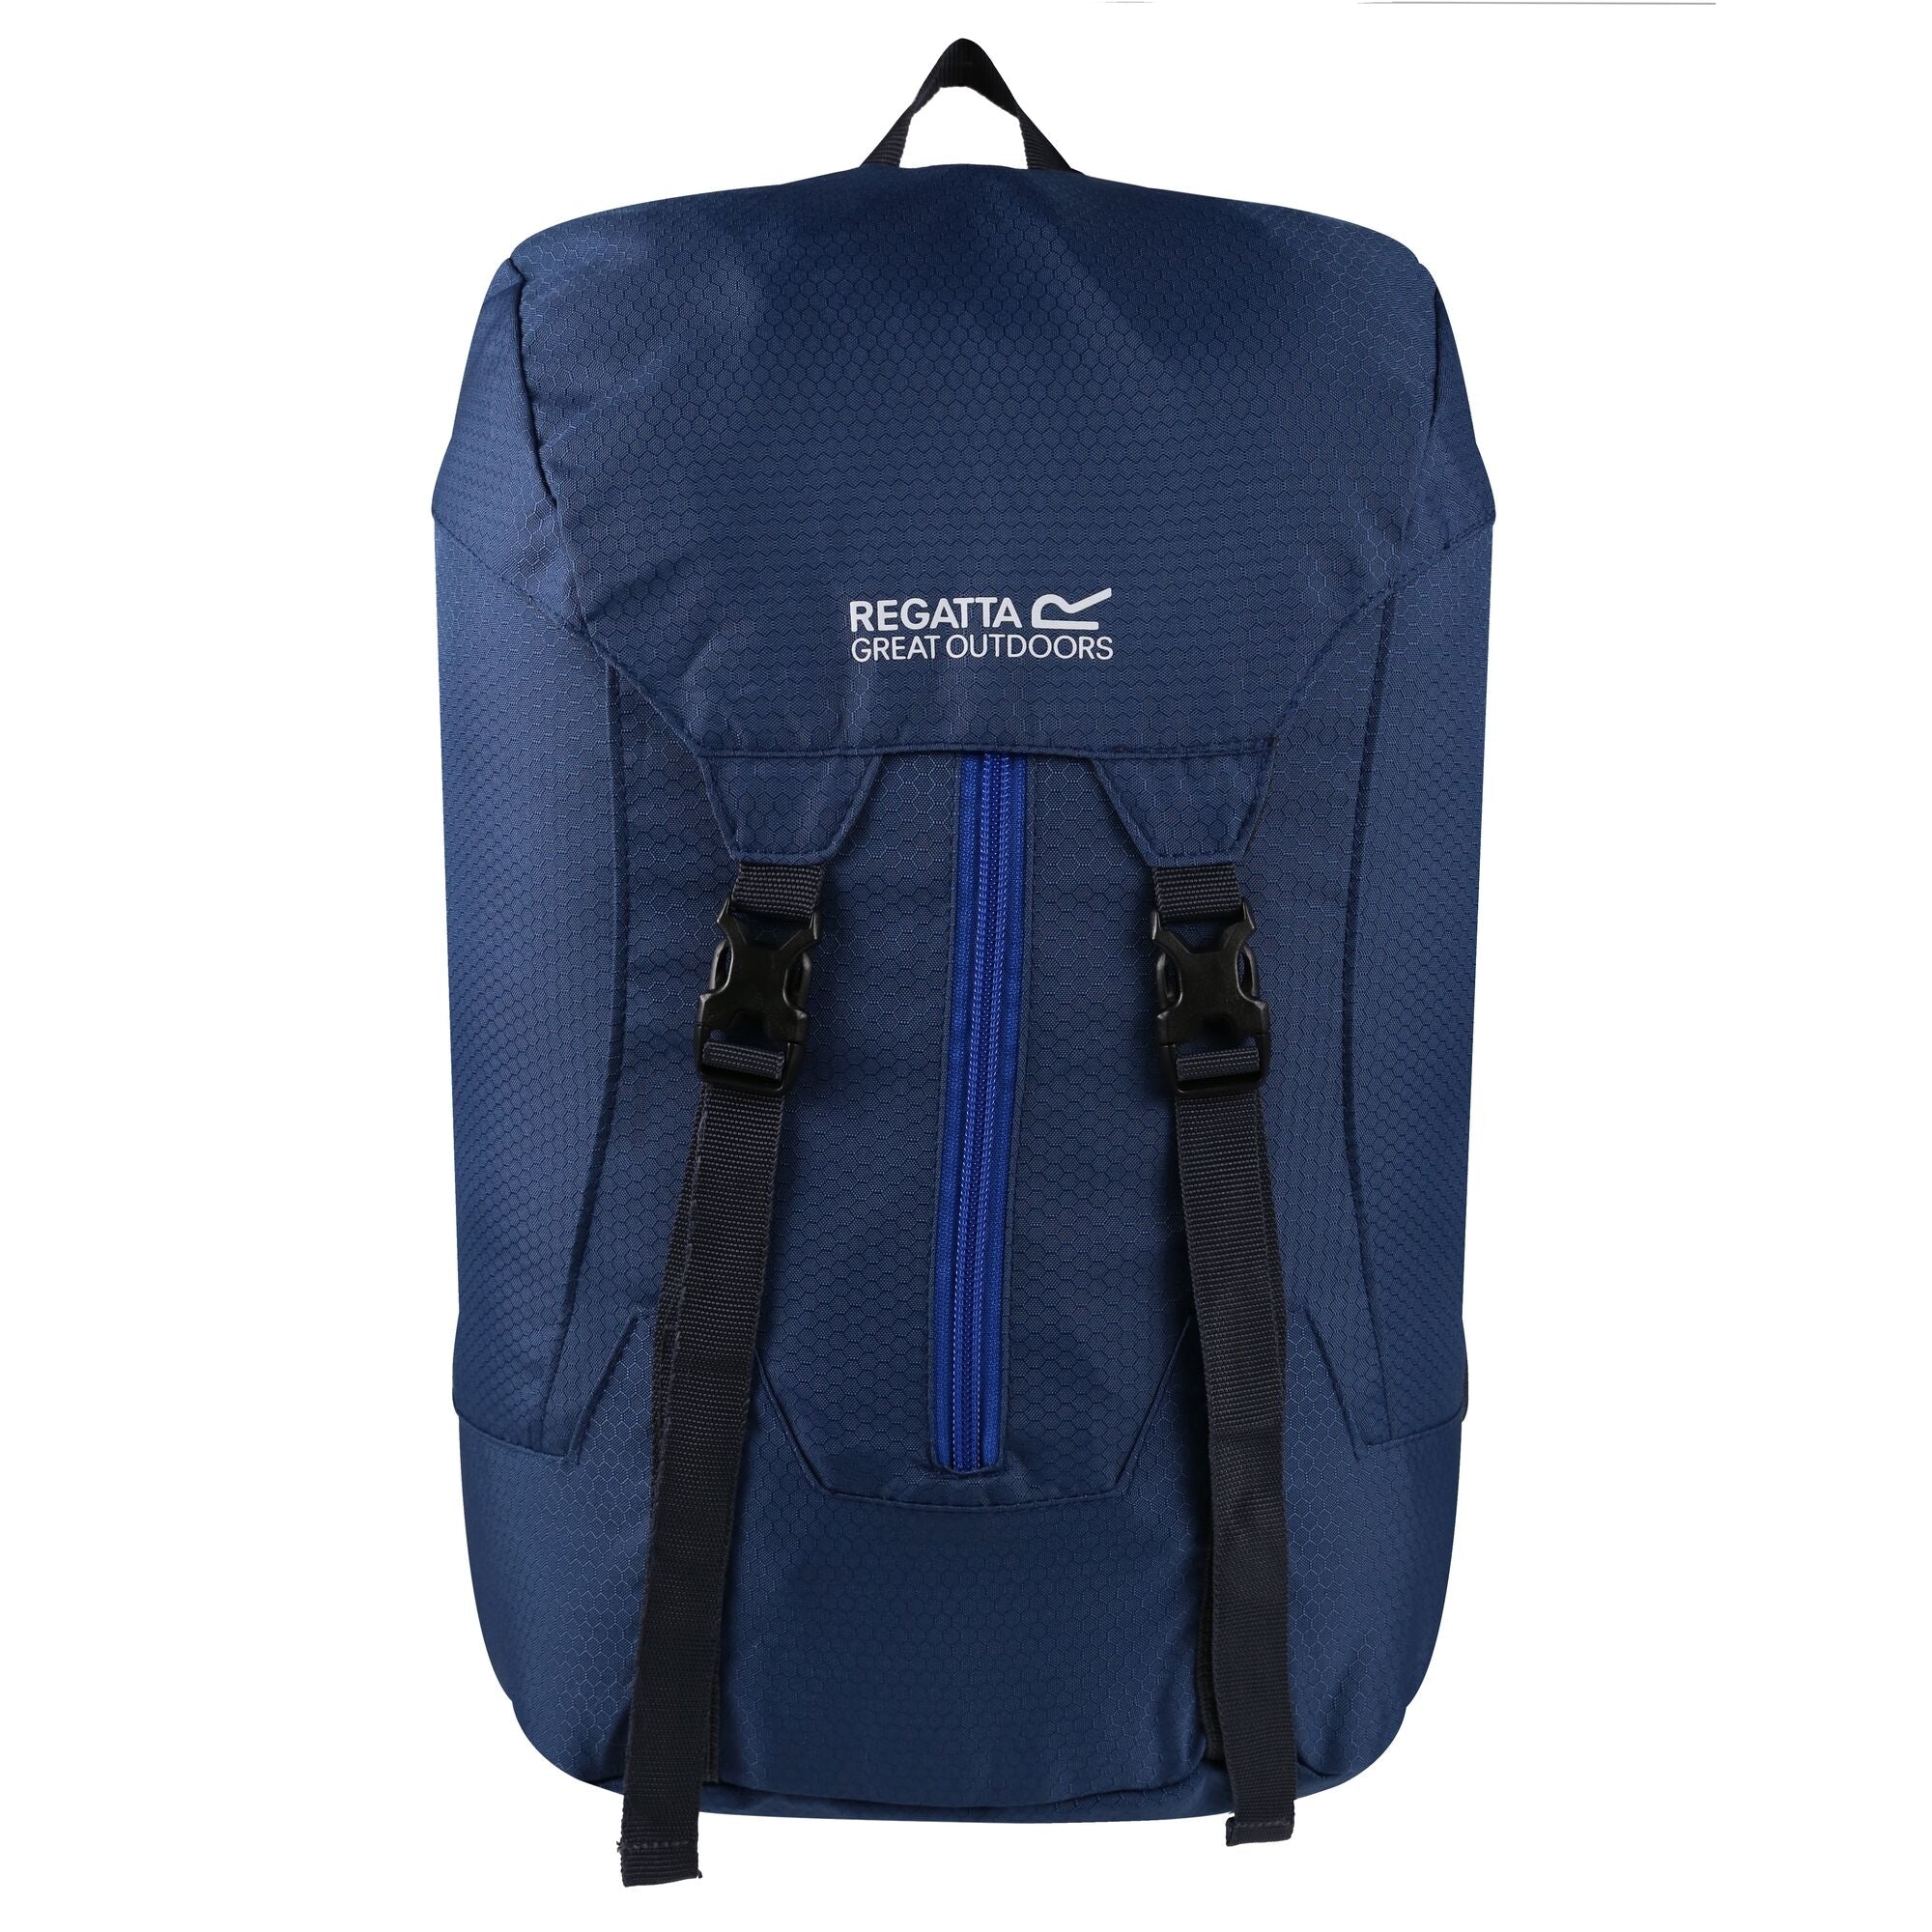 Regatta Easypack II 25L Packaway Backpack